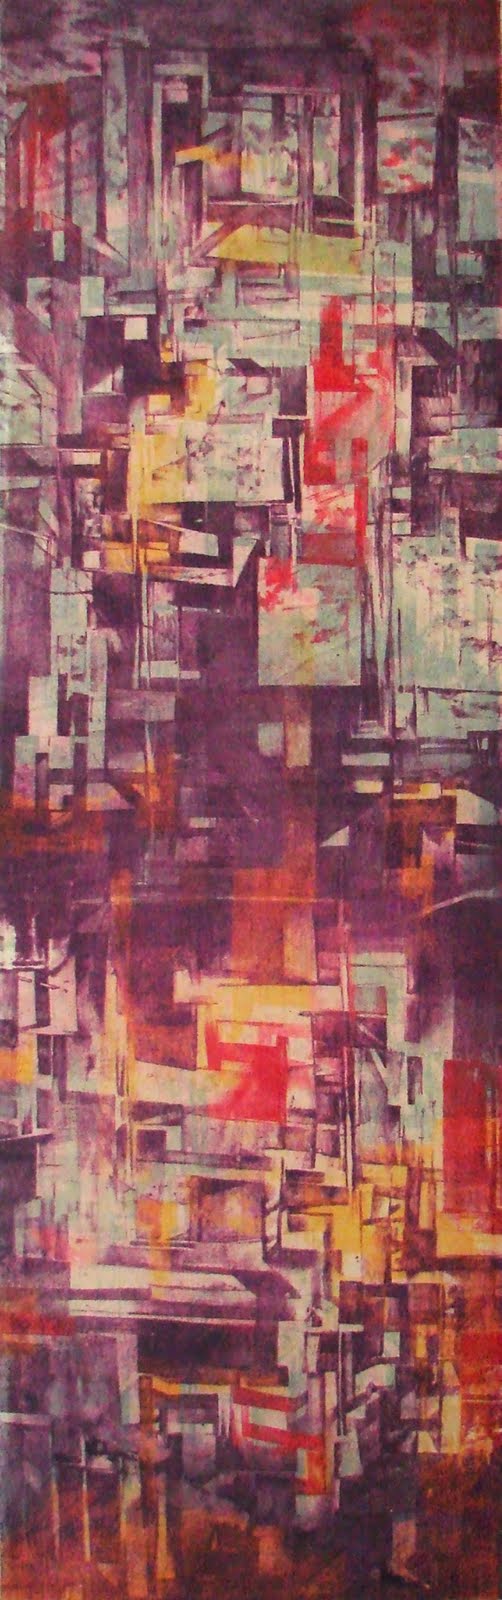 
Espacios del Tiempo XXIX, Medio Mixto, (“Intaglio- Type”, seda aguatinta y relieve), 58” x 18”, 2010, Grabado de la artista puertorriqueña Haydee Landing.  